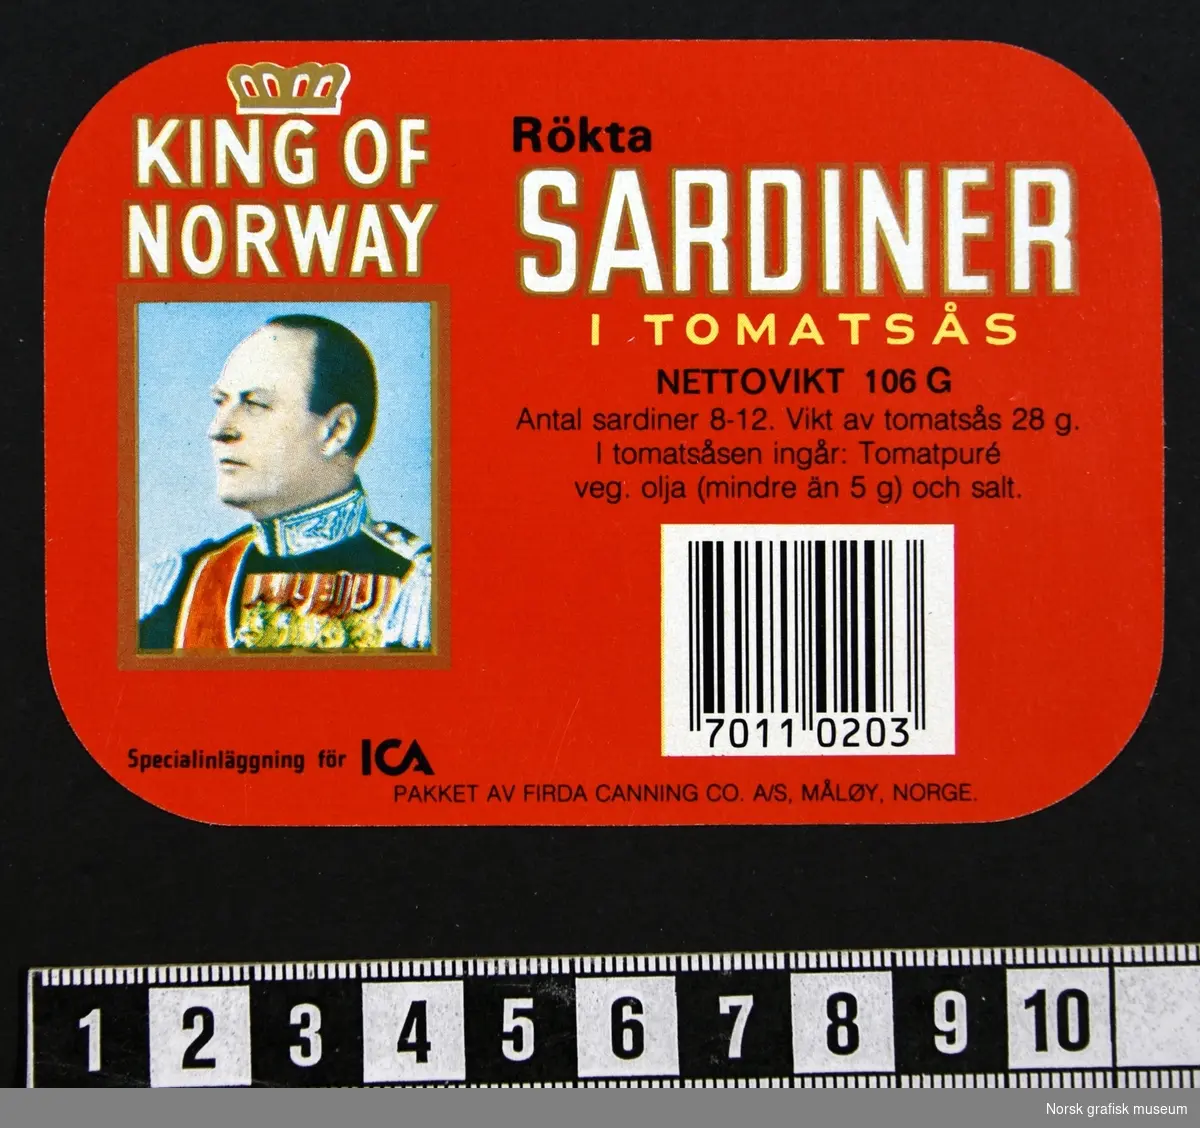 Rød etikett med varenavnet med portrettet av Kong Olav på venstre side, og varebeskrivelse og deklerasjon på svensk på høyre side. 

"Rökta sardiner i  tomatsås"